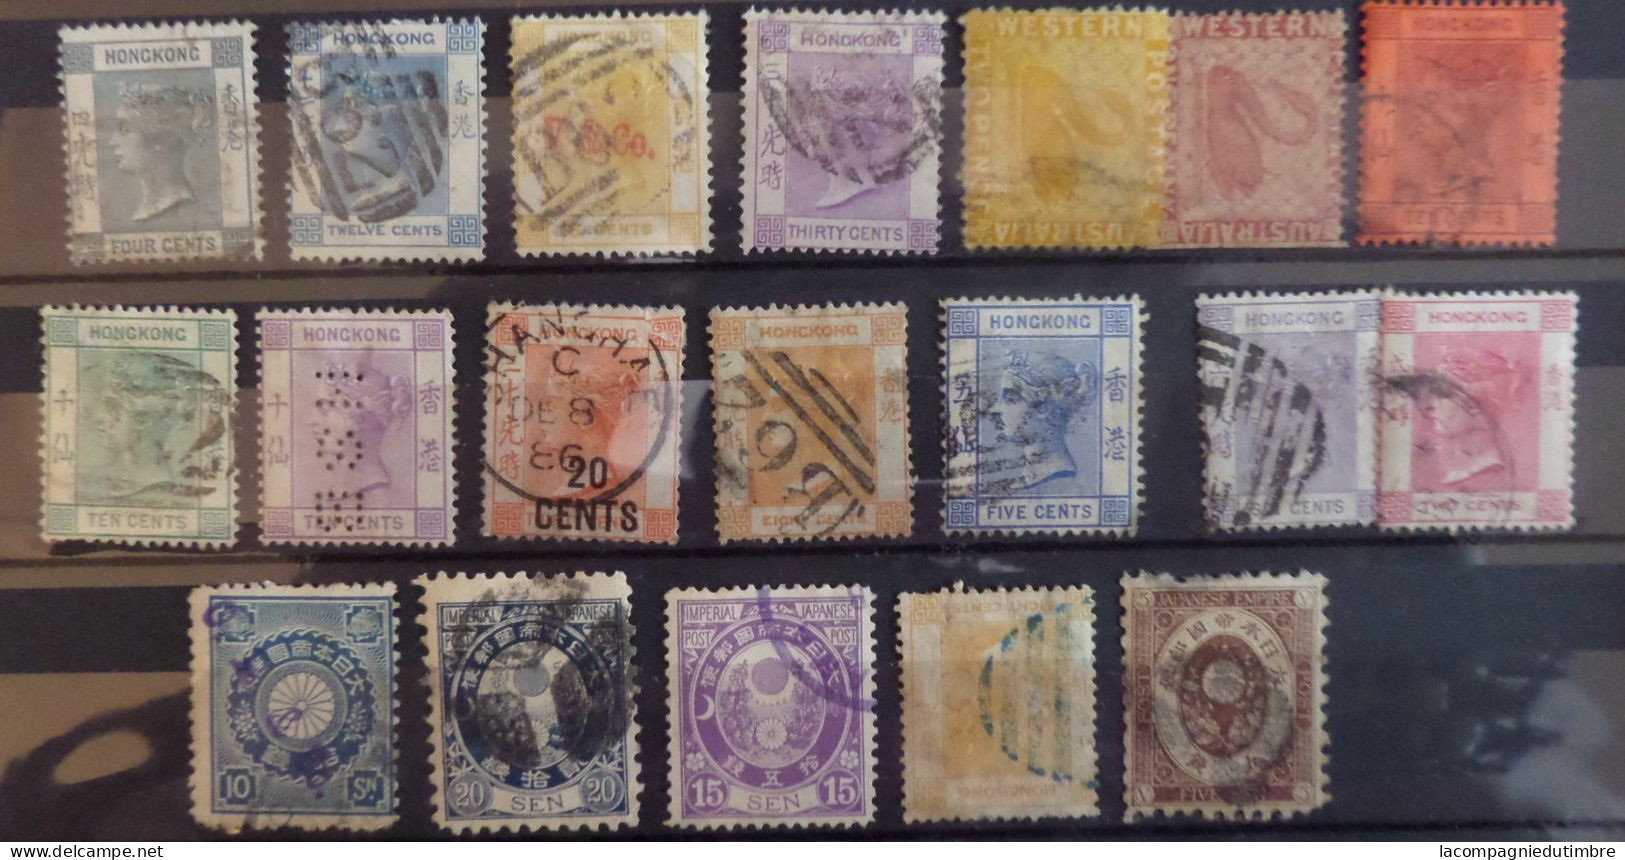 Gros vrac de milliers de timbres anciens neufs/oblitérés tous pays avec bonnes valeurs. Cote énorme!!!!